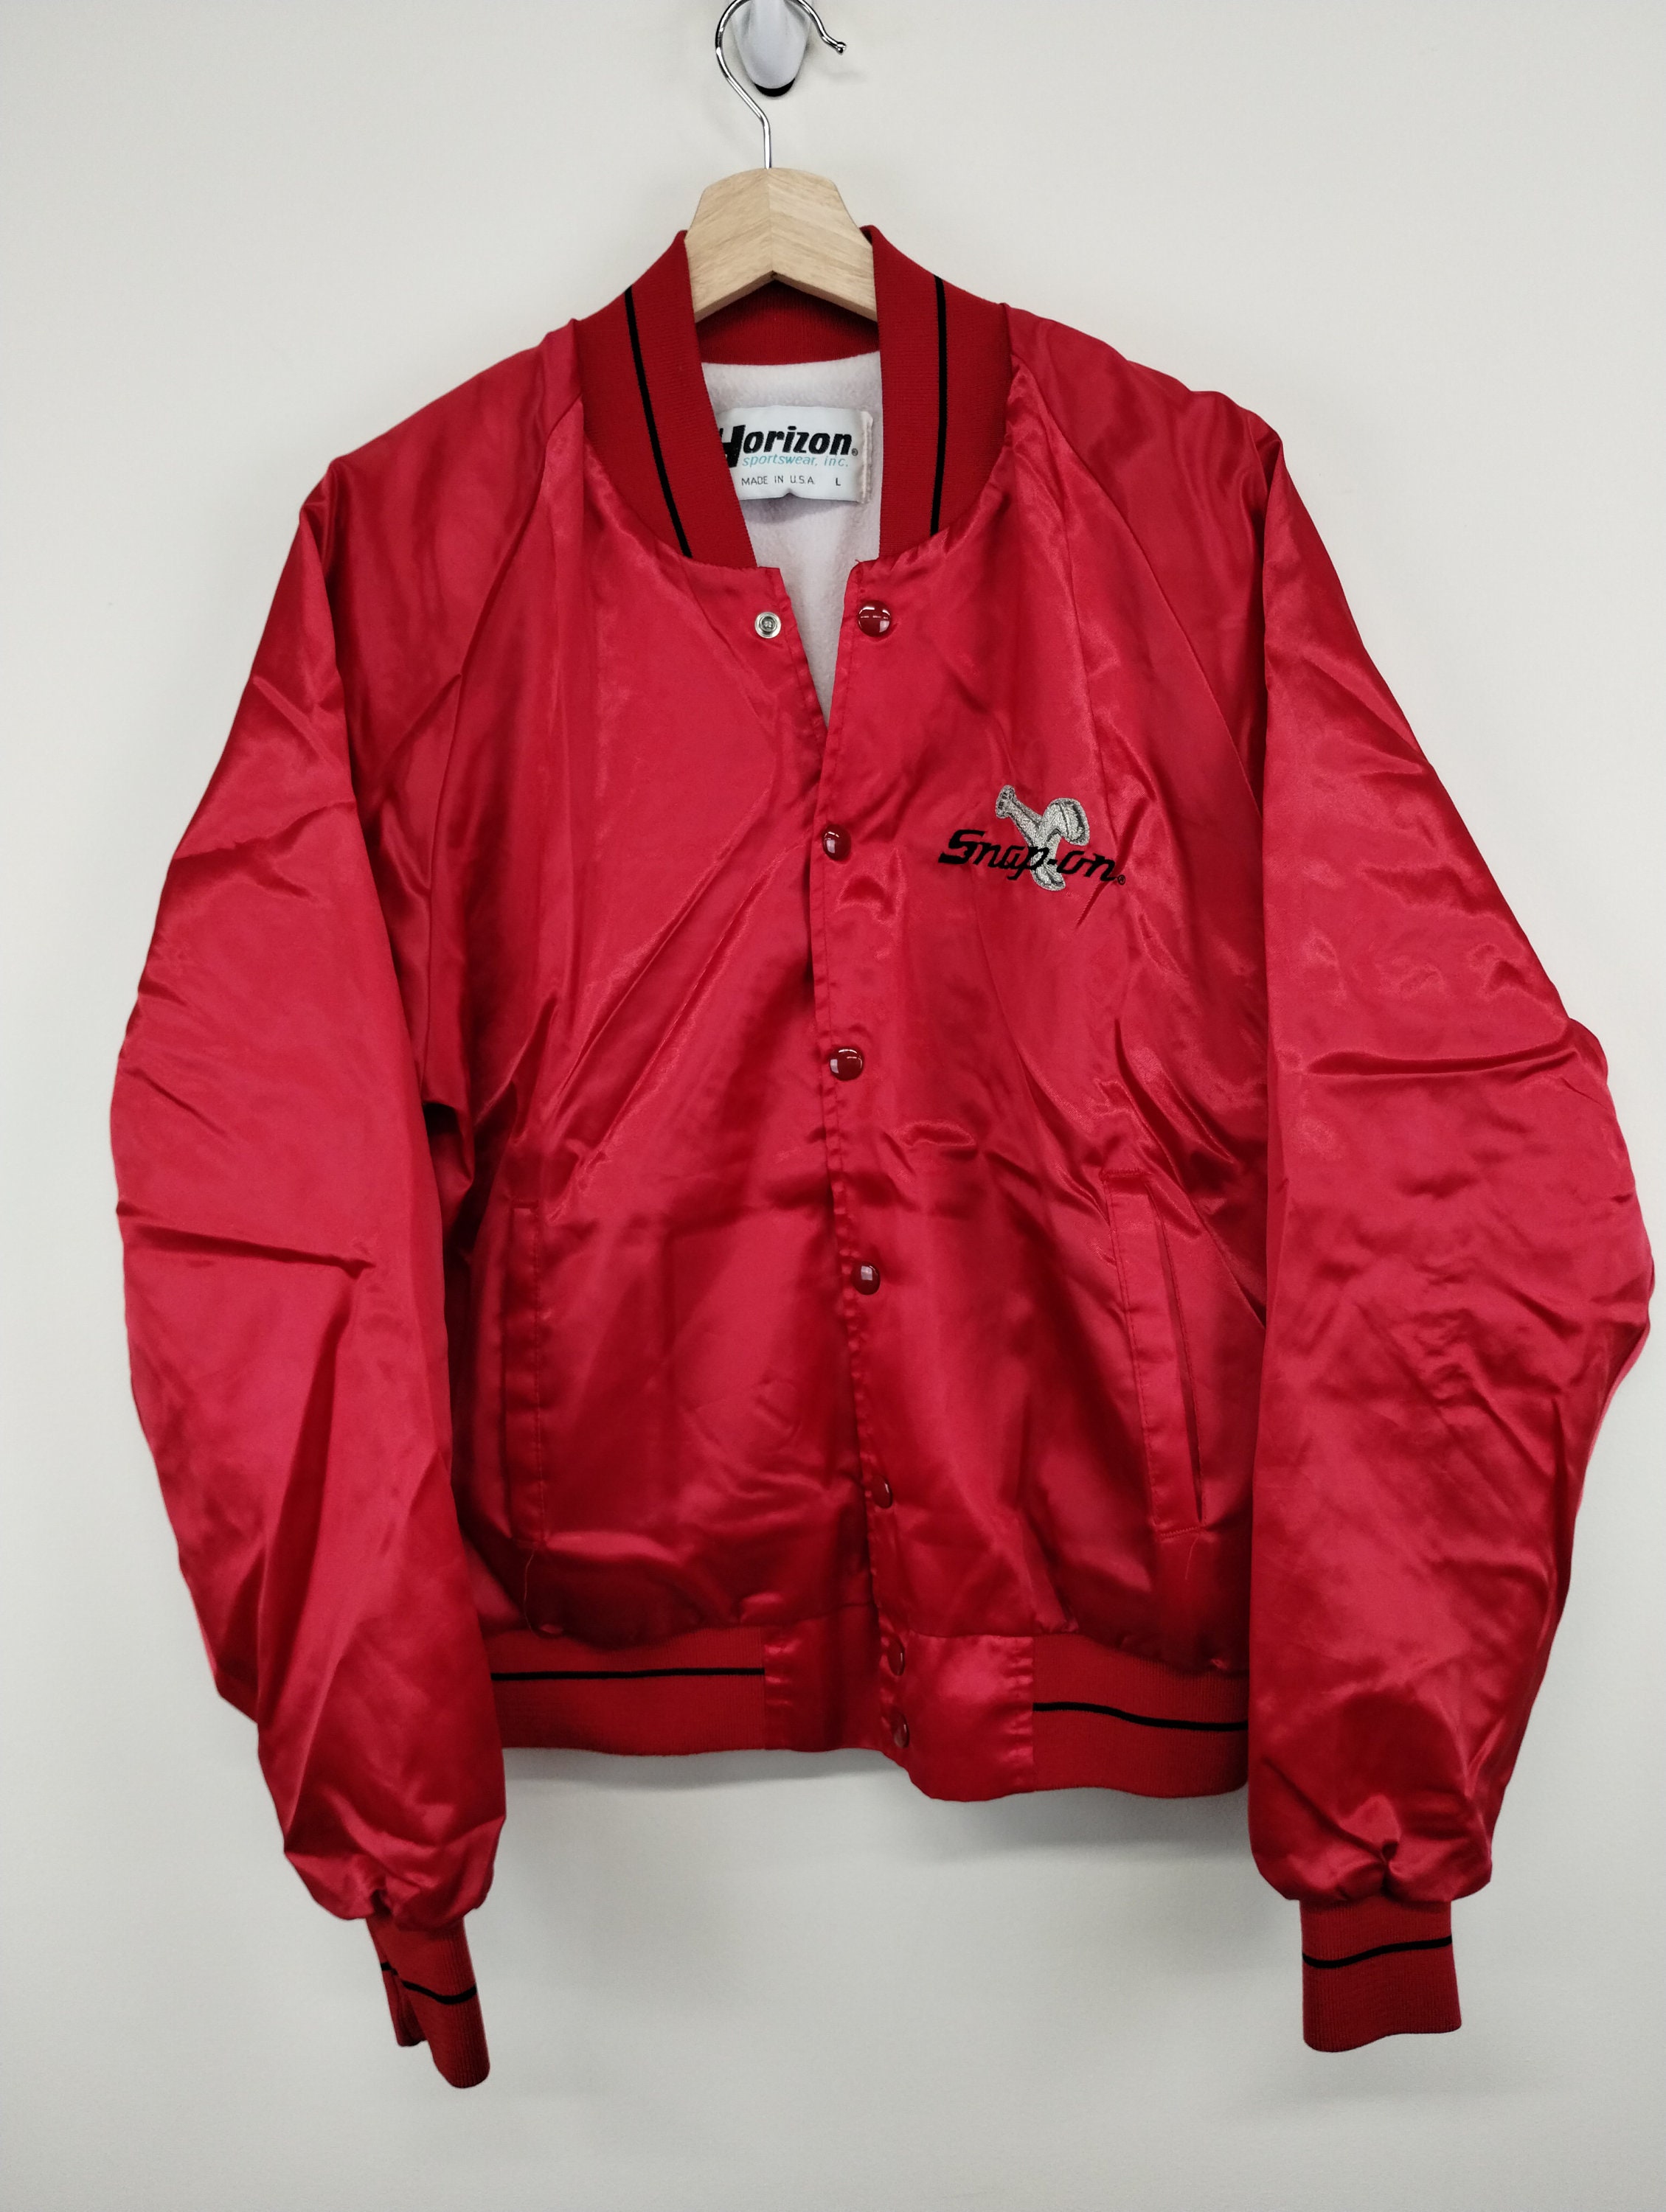 L 80s Horizon Snap on Tools Satin Varsity Red Jacket 1970s 1980s